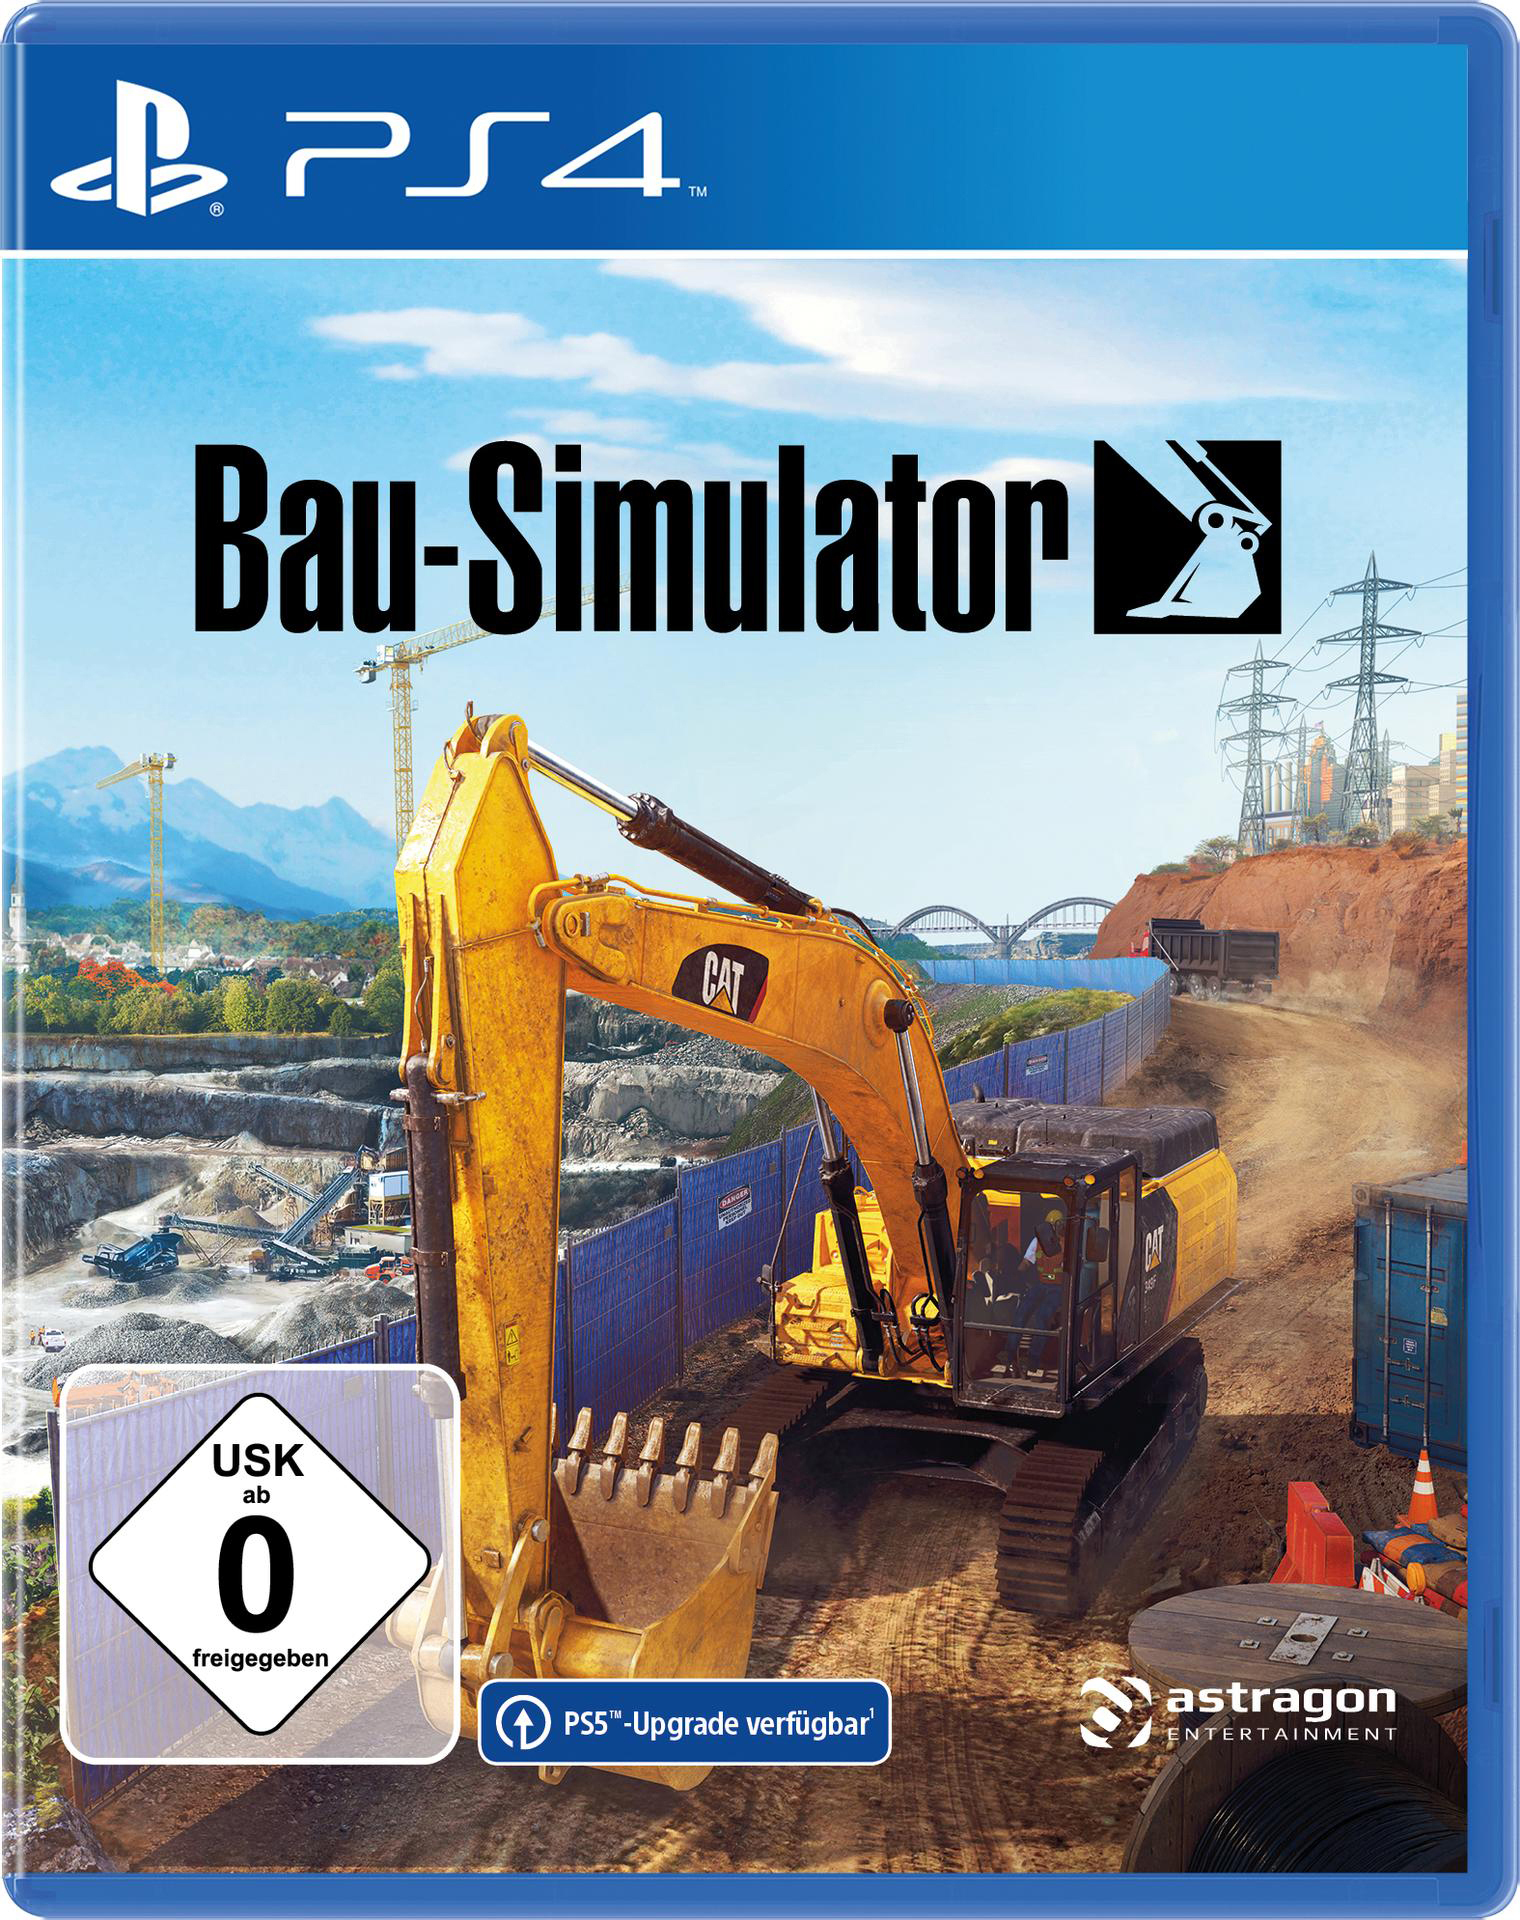 Bau-Simulator - [PlayStation 4